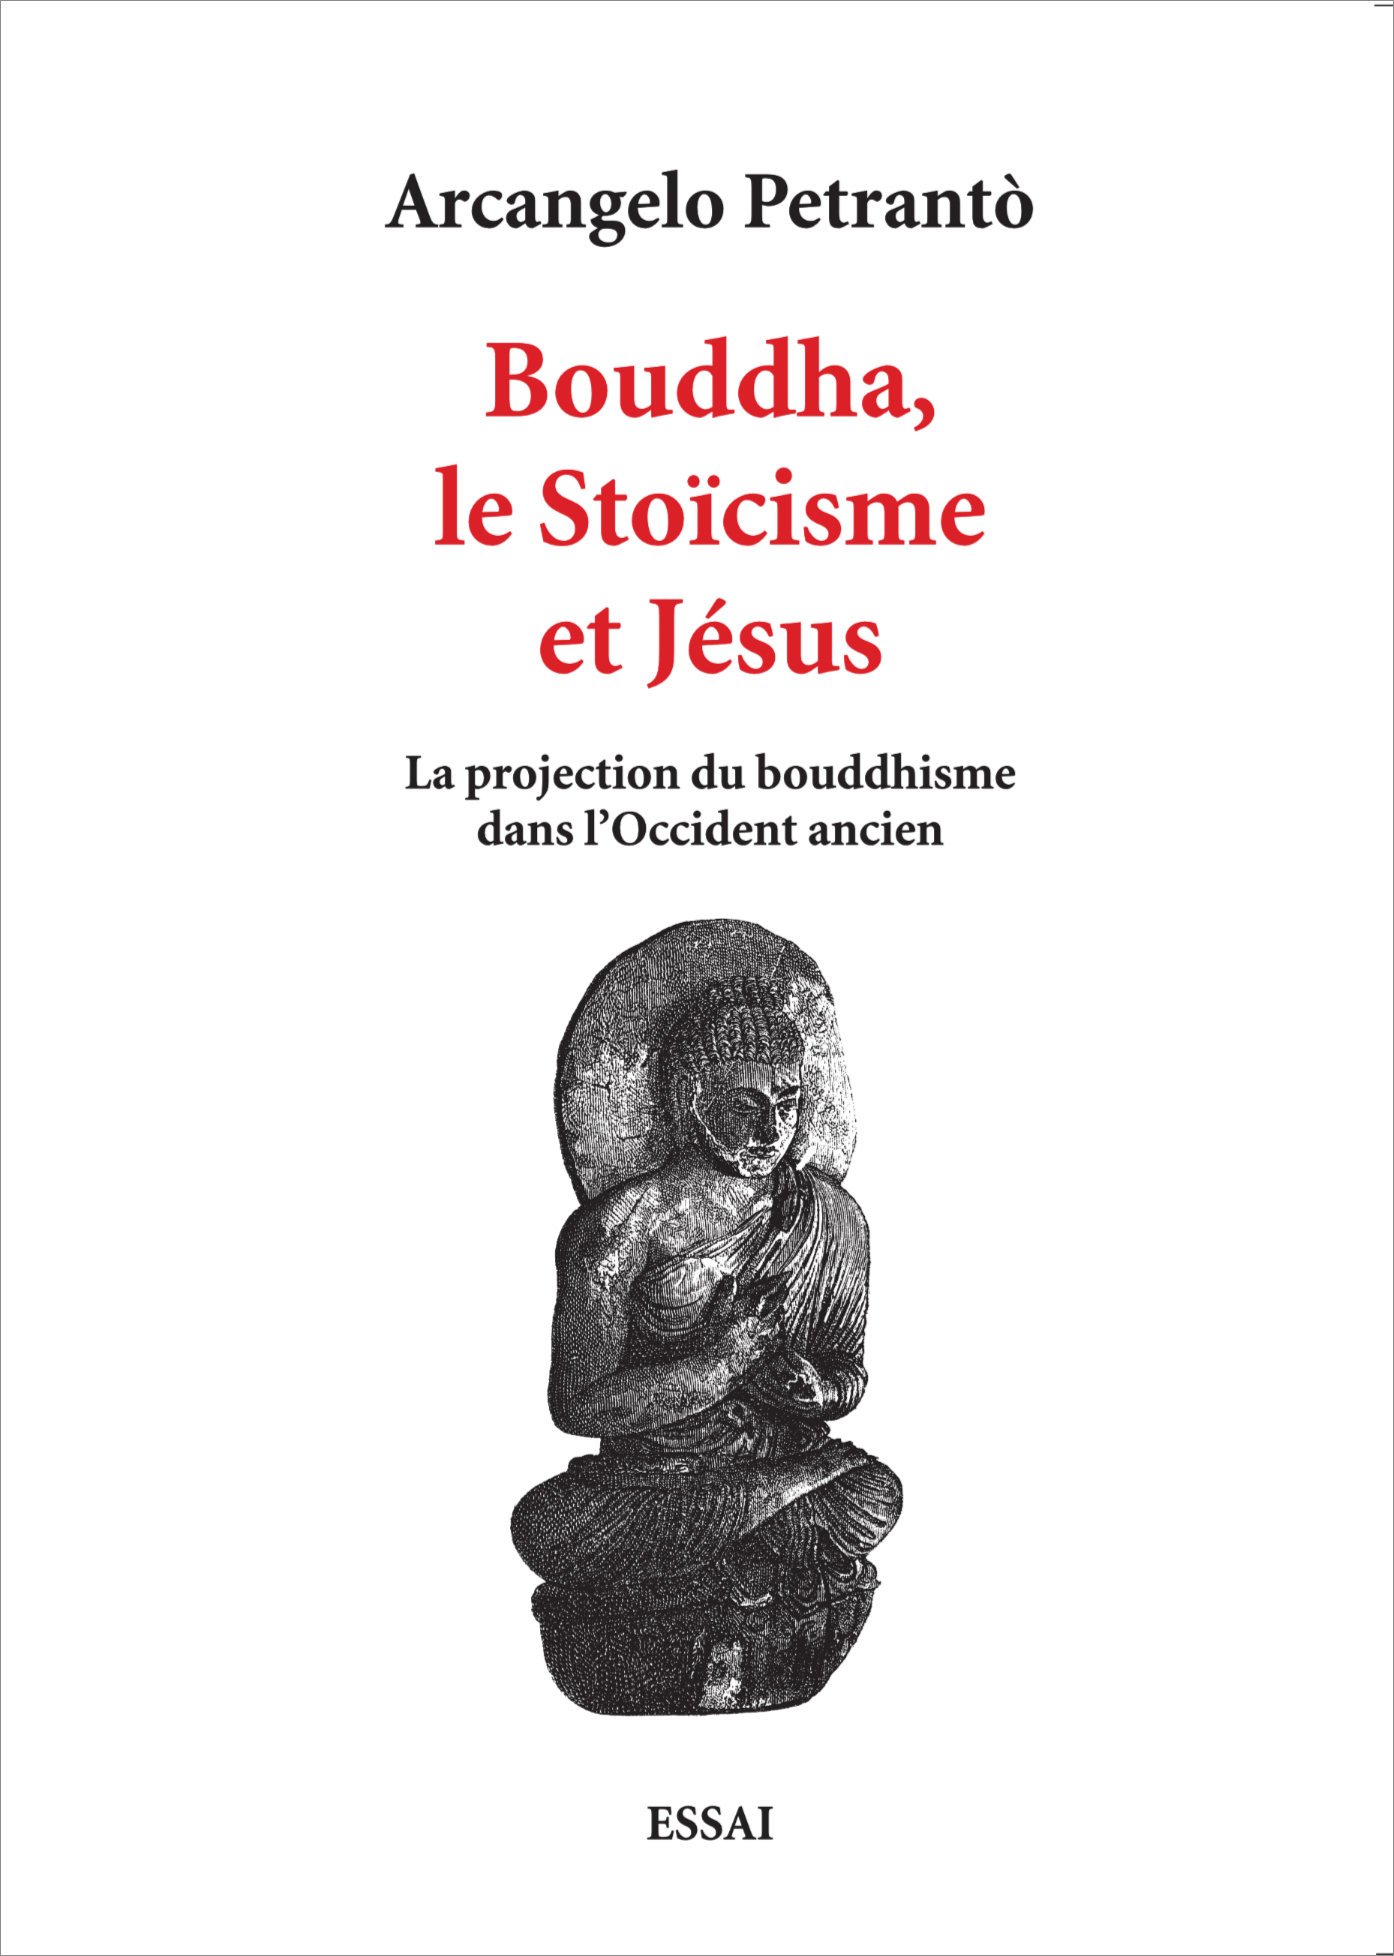 Bouddha, le Stoïcisme et Jésus deArcangelo Petrantò. Essai.